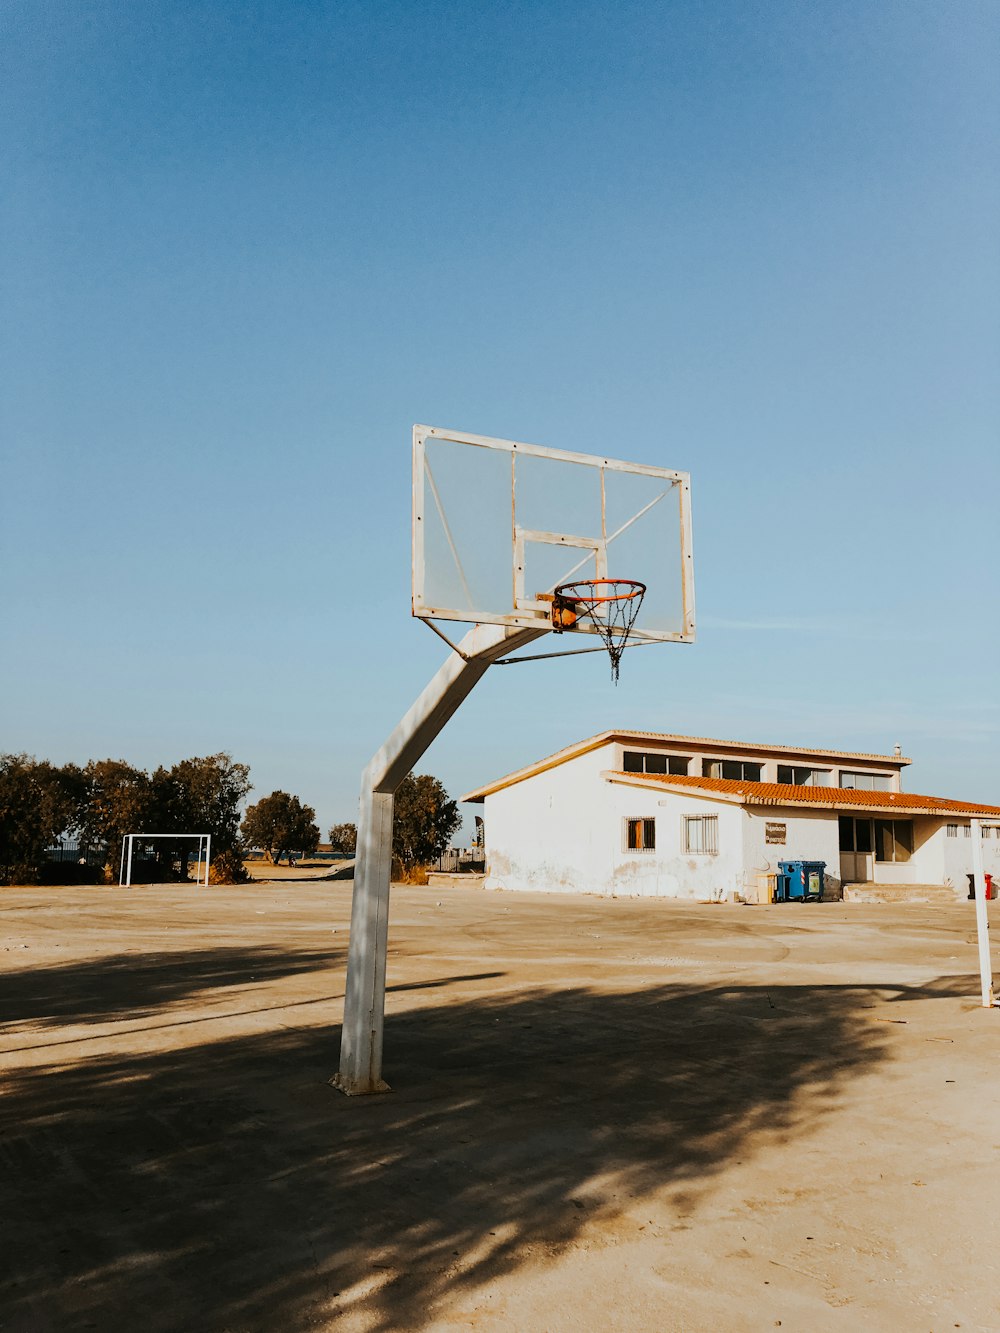 Aro de baloncesto frente al edificio blanco durante el día